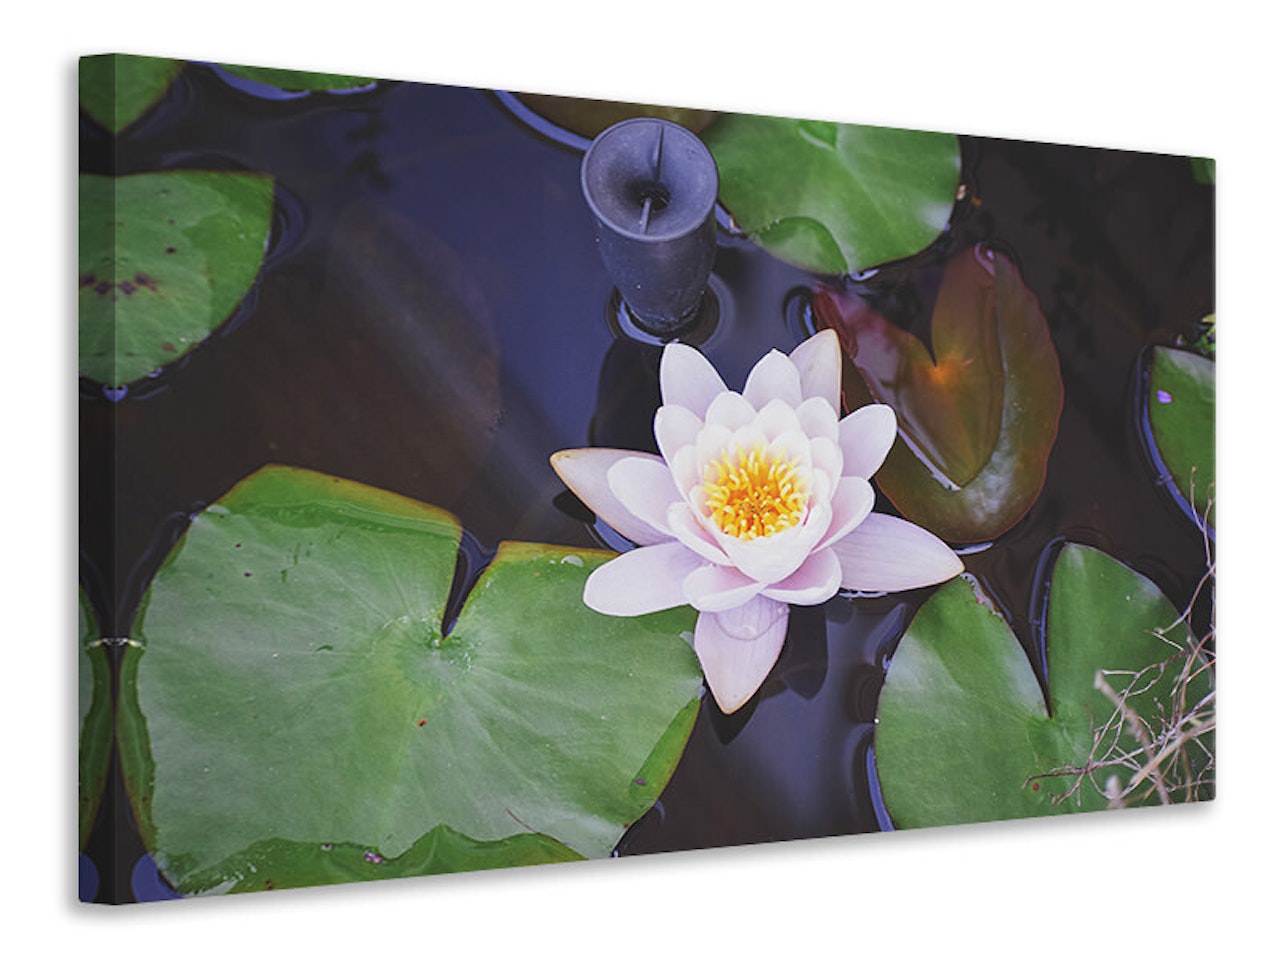 Ljuddämpande tavla - the lily pad in white